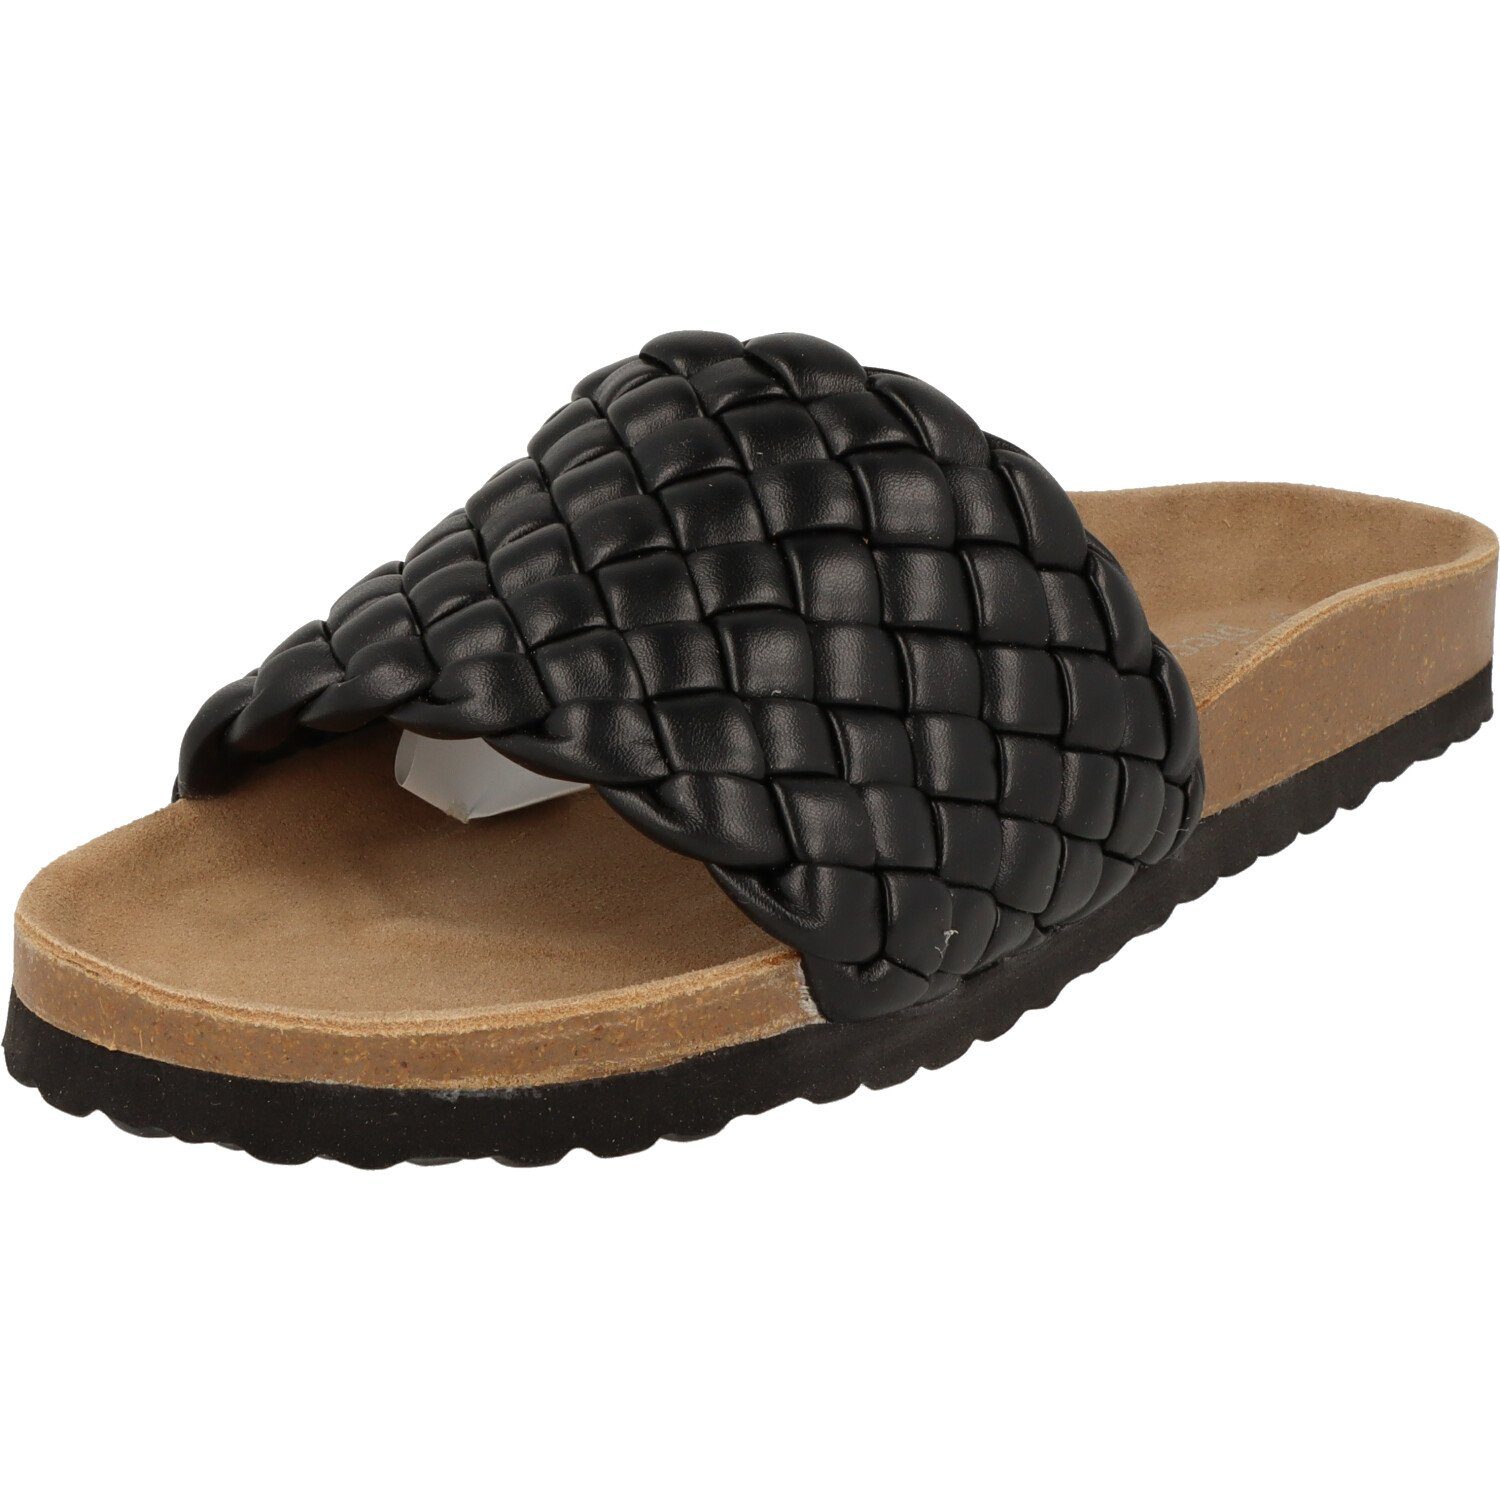 piece of mind. 274-043 Damen Schuhe elegante Komfort Slipper Fußbett Pantolette Black